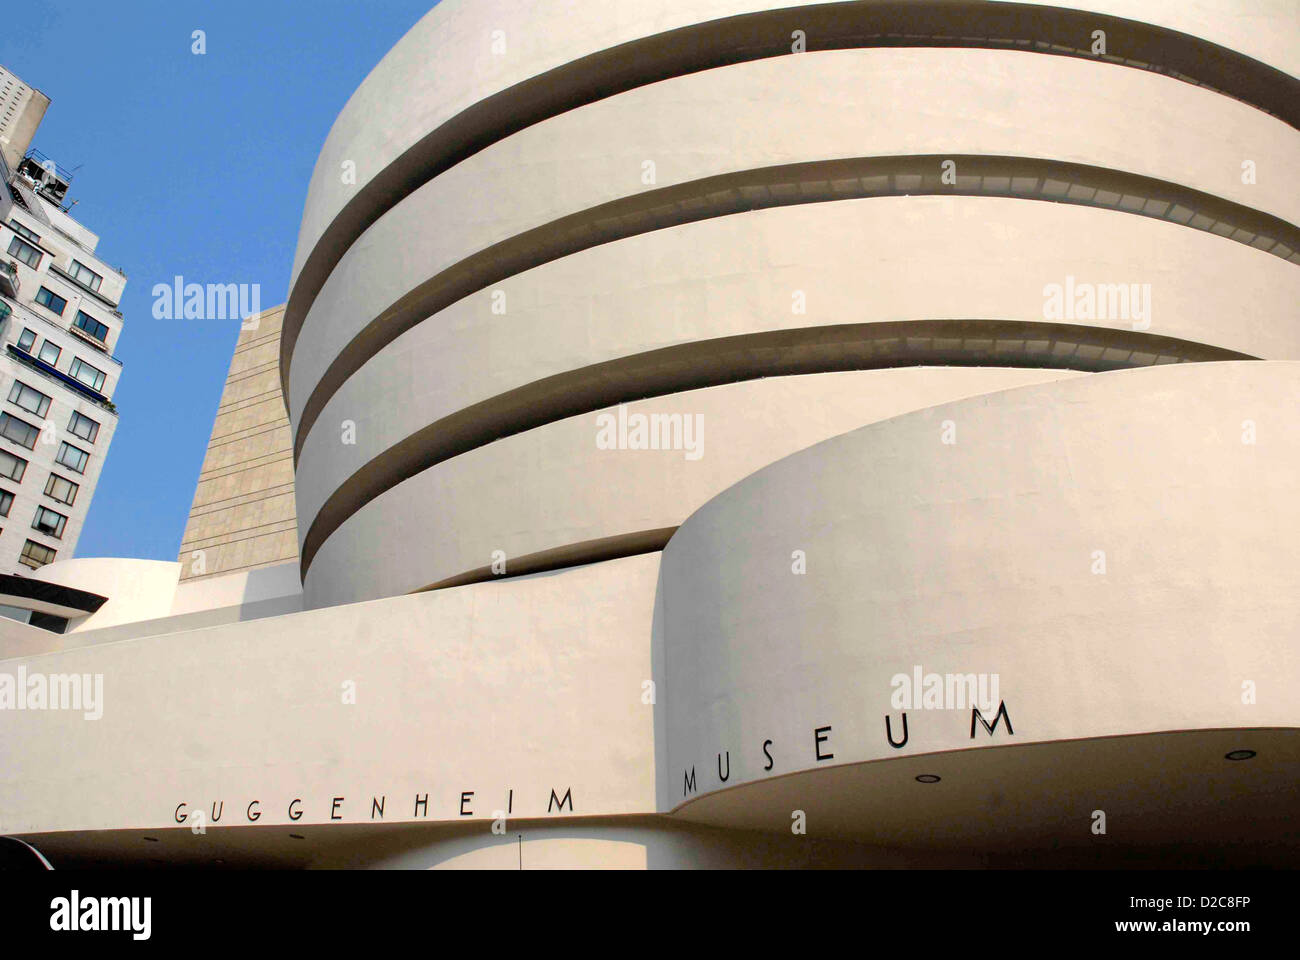 Guggenheim Museum, Manhattan, New York Stock Photo